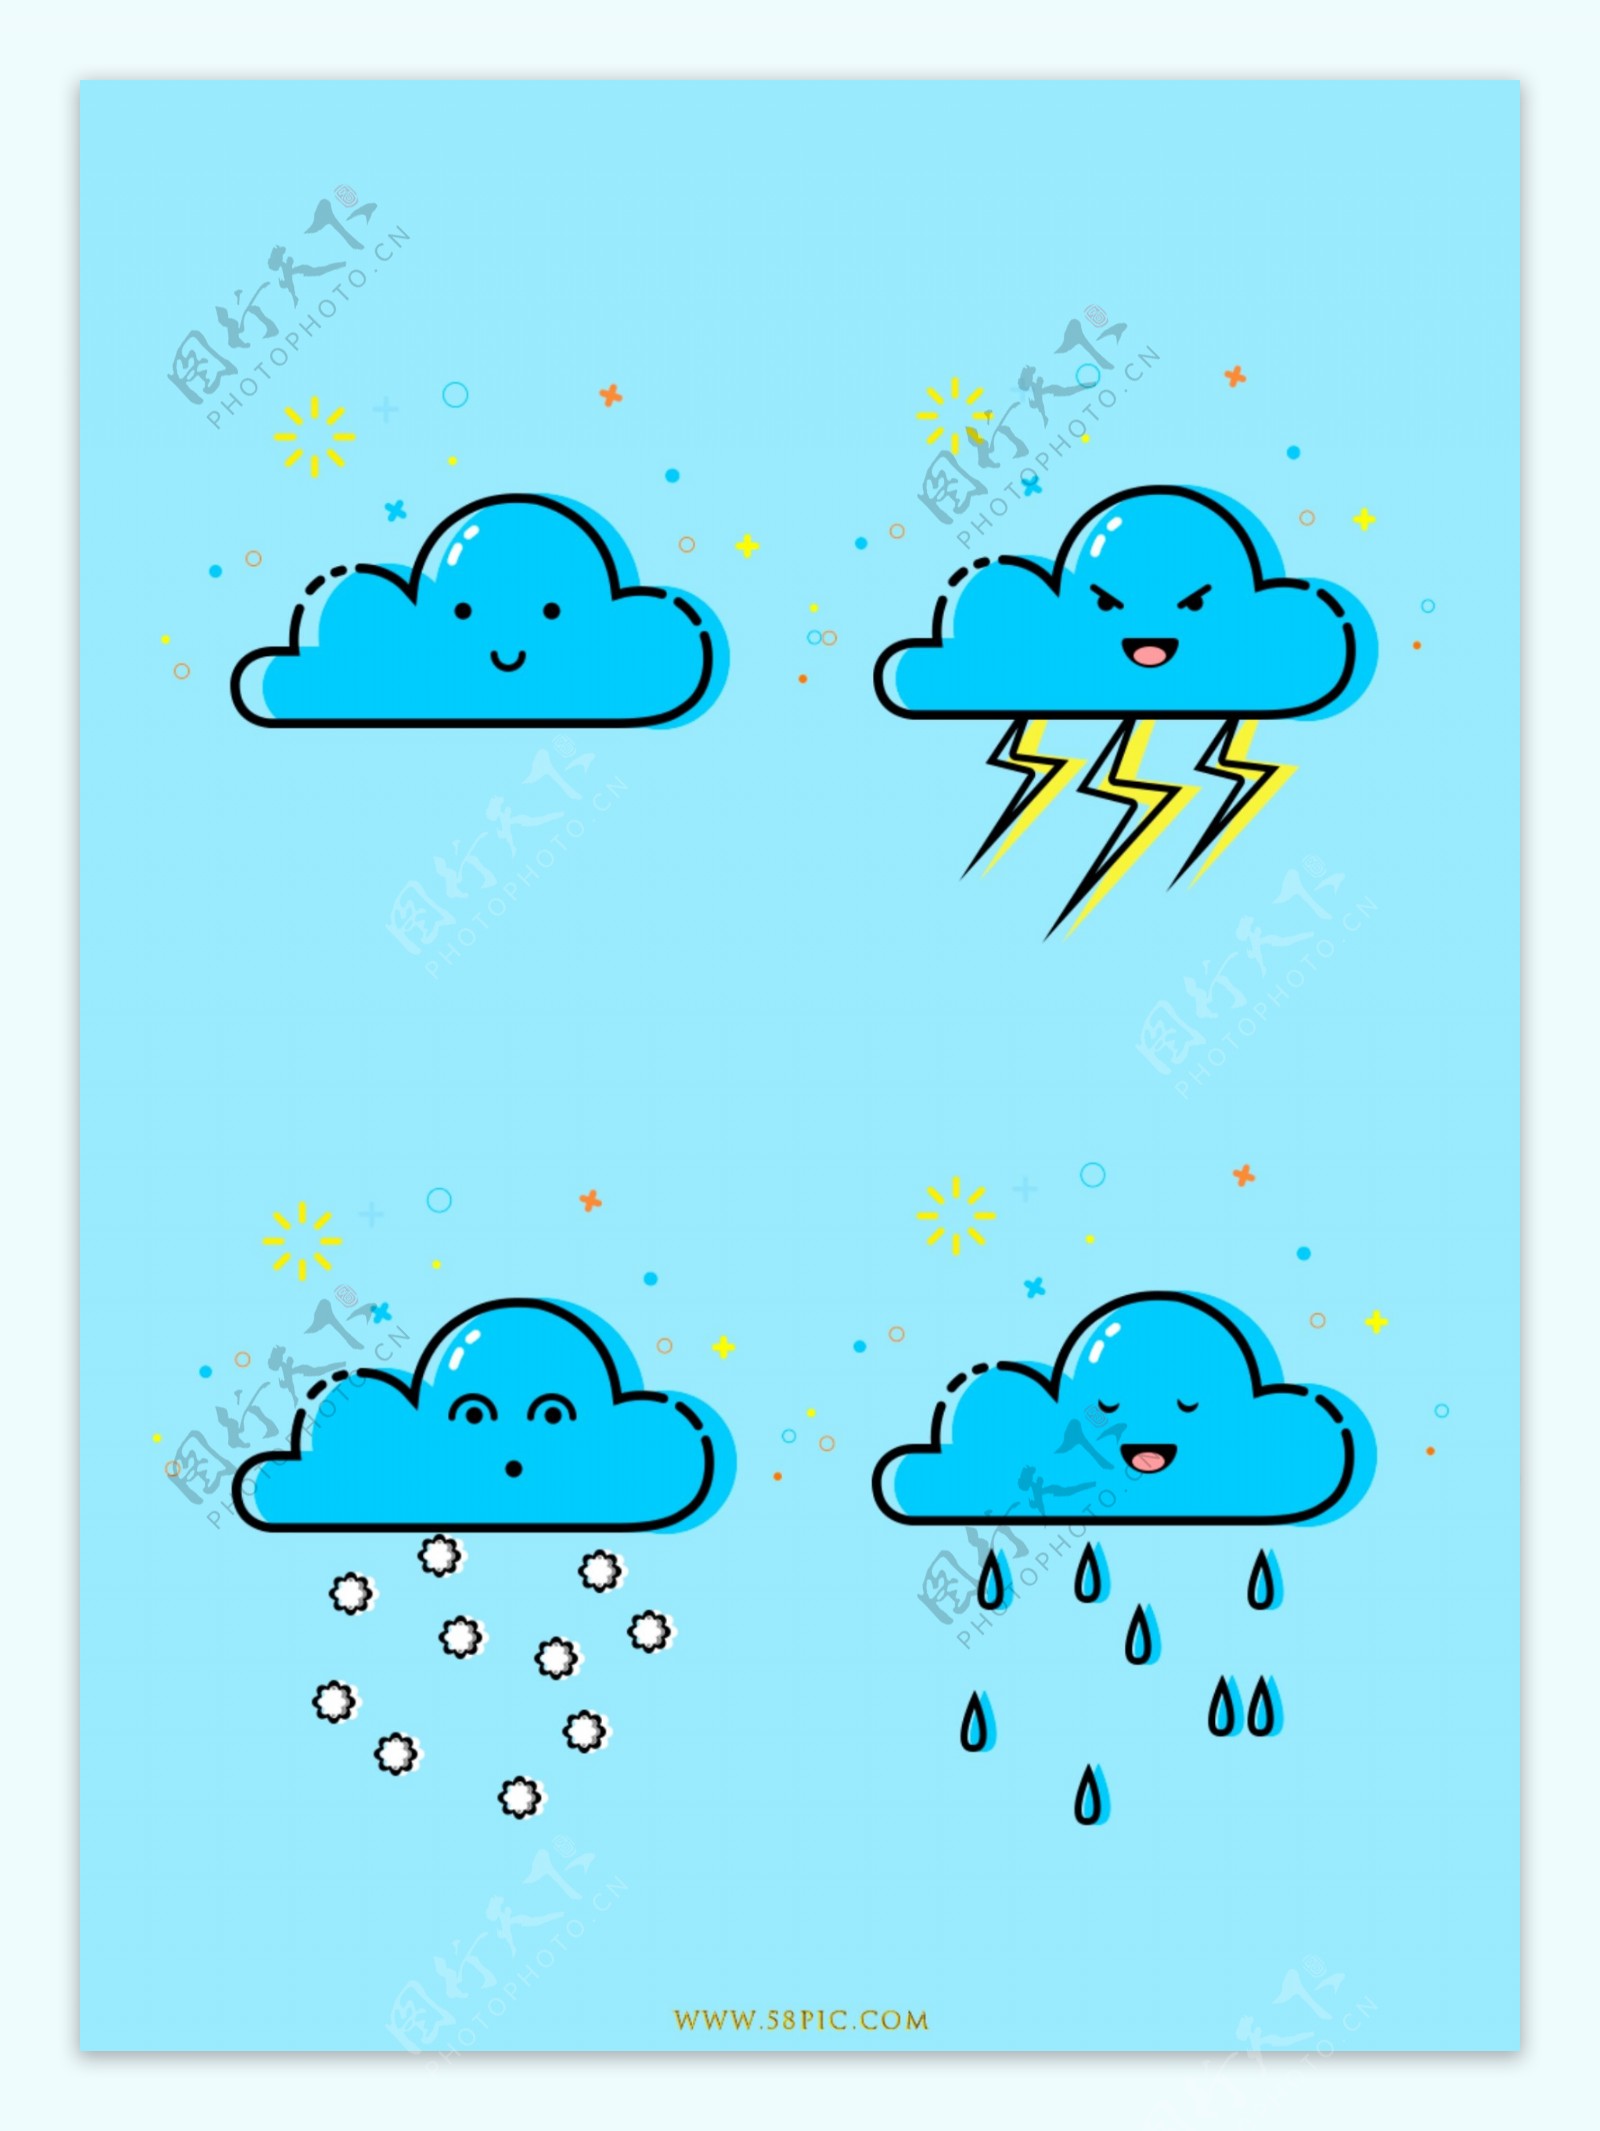 打雷下雨趋势MBE风格简洁可爱天气云图标